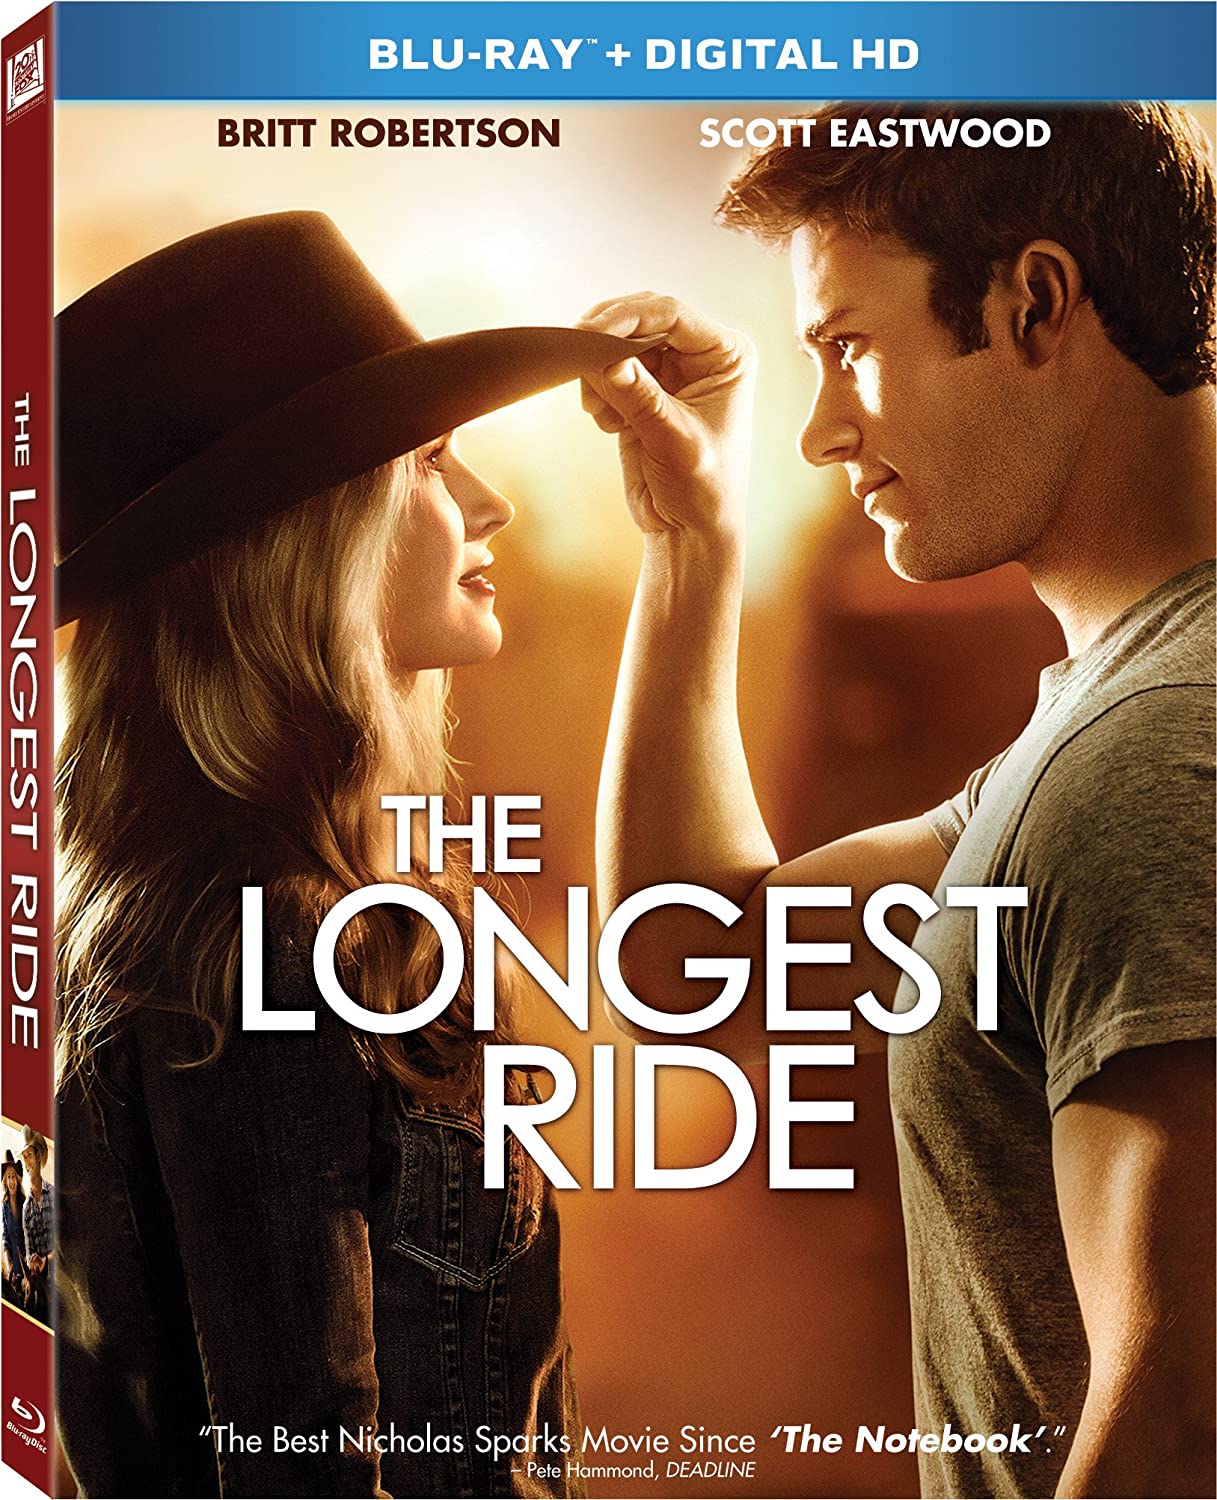 Stiahni si HD Filmy Nejdelsi jizda / The Longest Ride (2015)(CZ/EN) = CSFD 74%